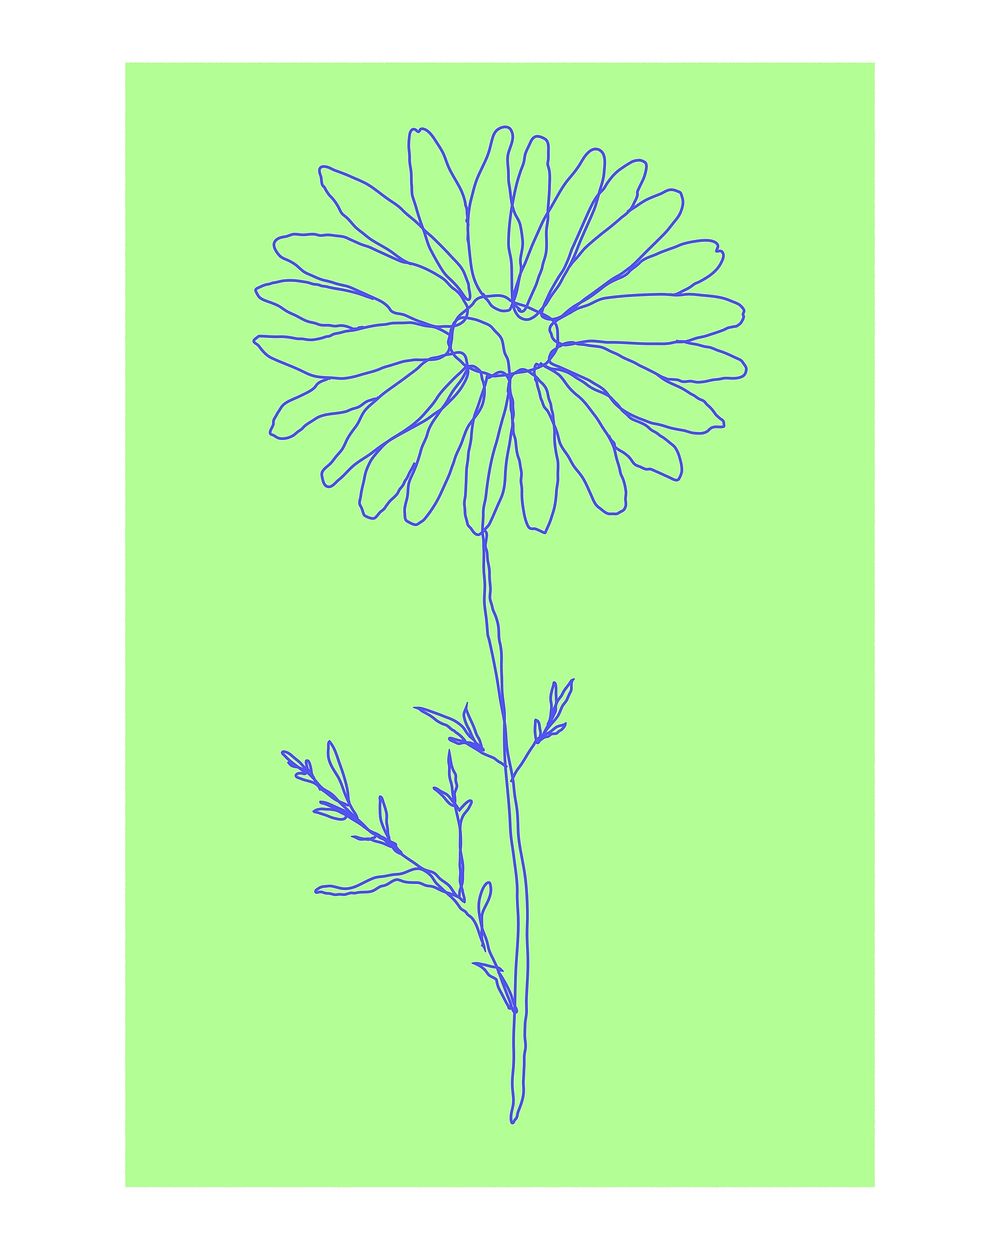 Flower line art poster, aesthetic green design